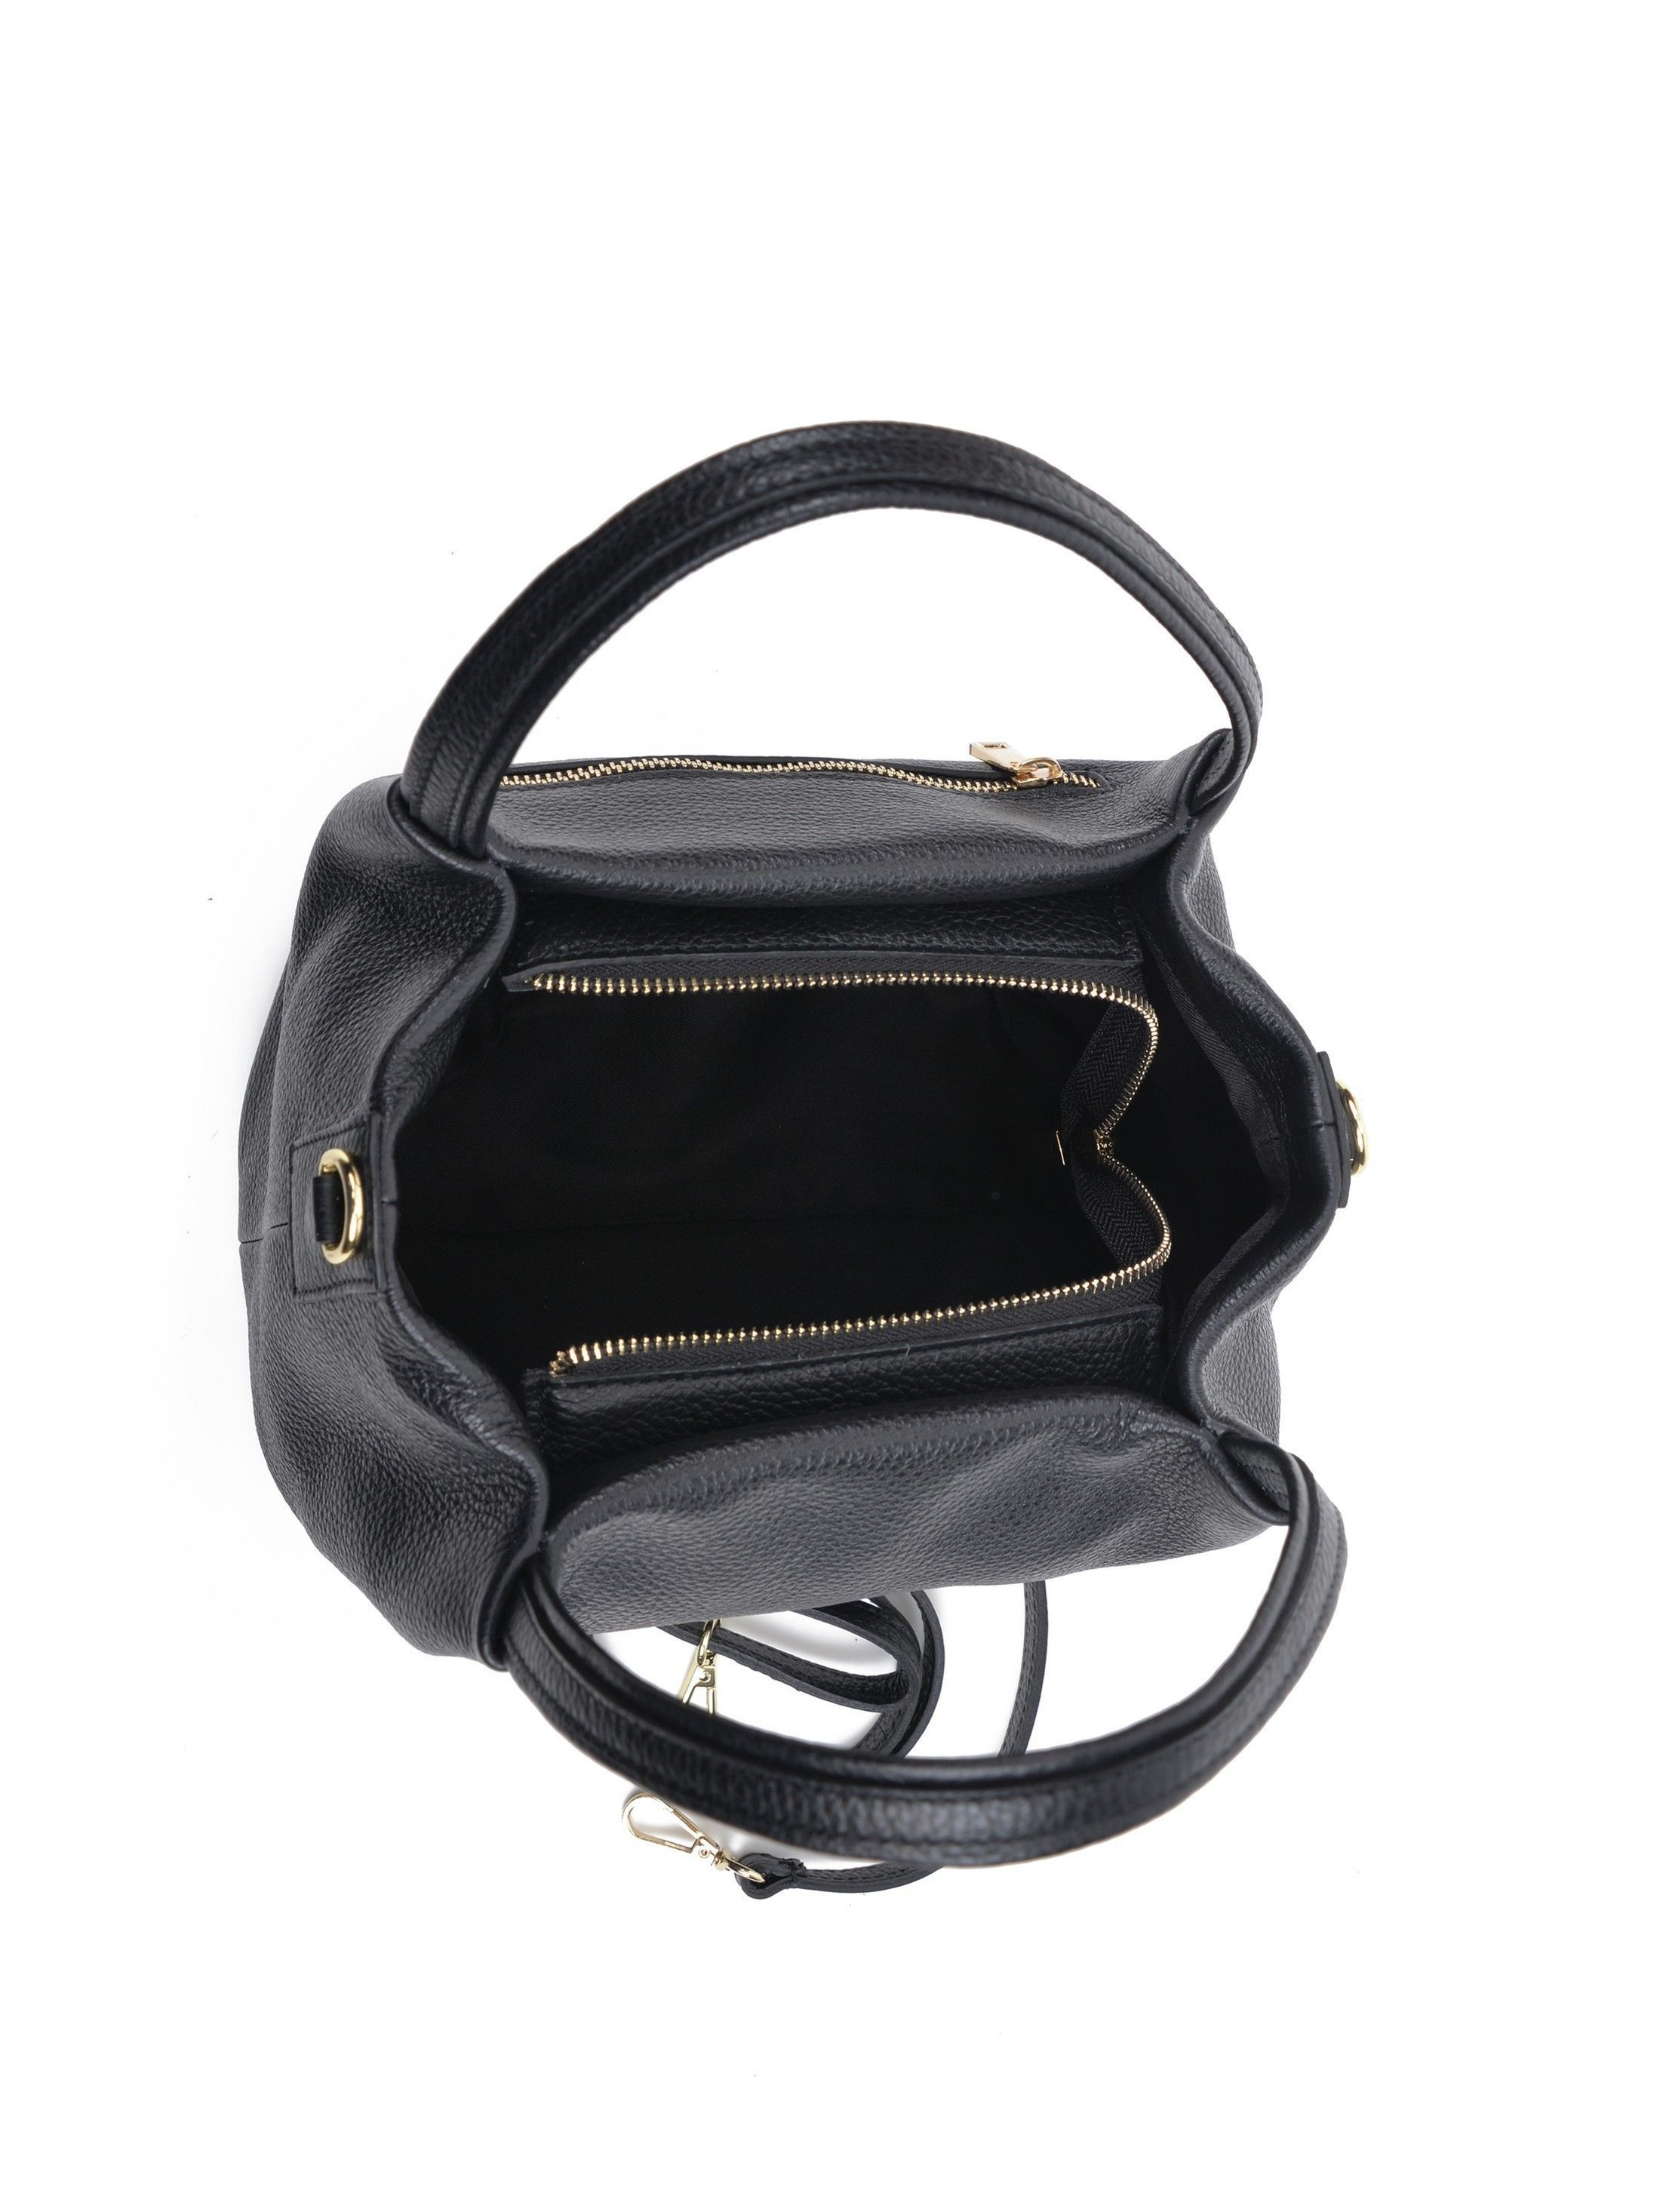 Top Handle Bag
100% cow leather
Single top handle: 20 cm
Top zip closure with flapover lock
Detachable shoulder strap: 120 cm
Dimensions (L): 18x22x10 cm